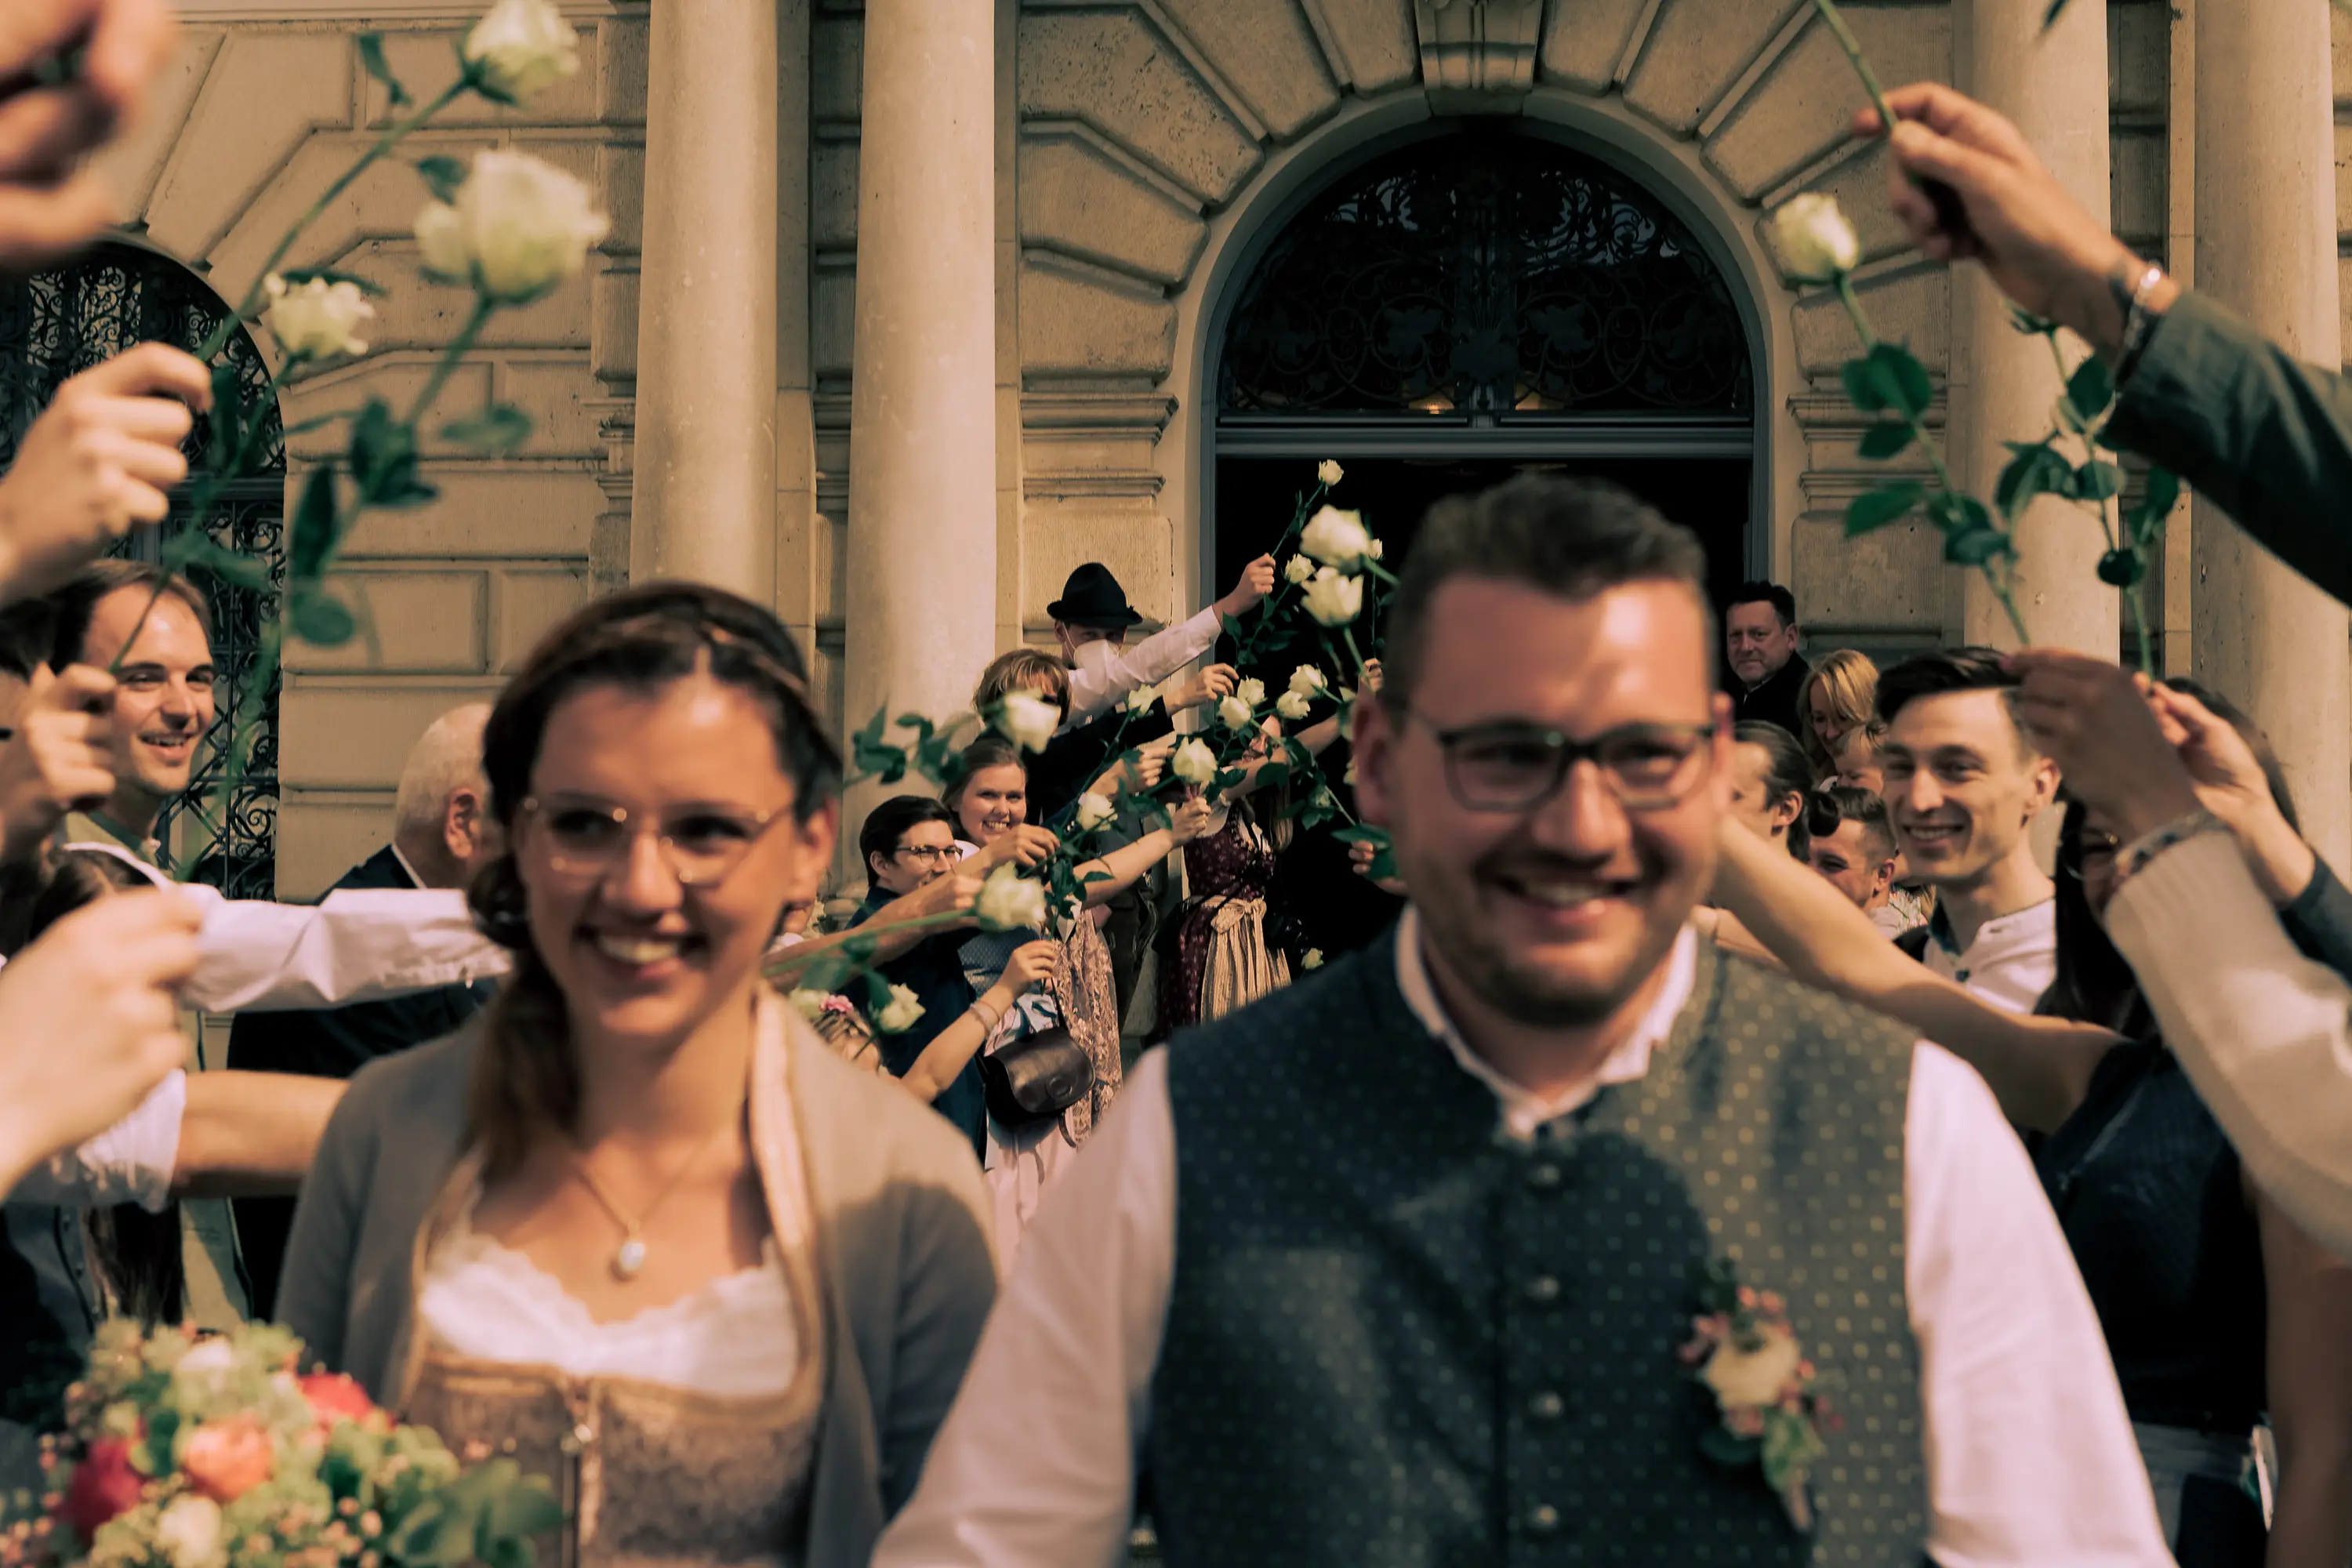 Foto wie die Gäste Spalier stehen, im Vordergrund ist unscharf das Brautpaar erkennbar.